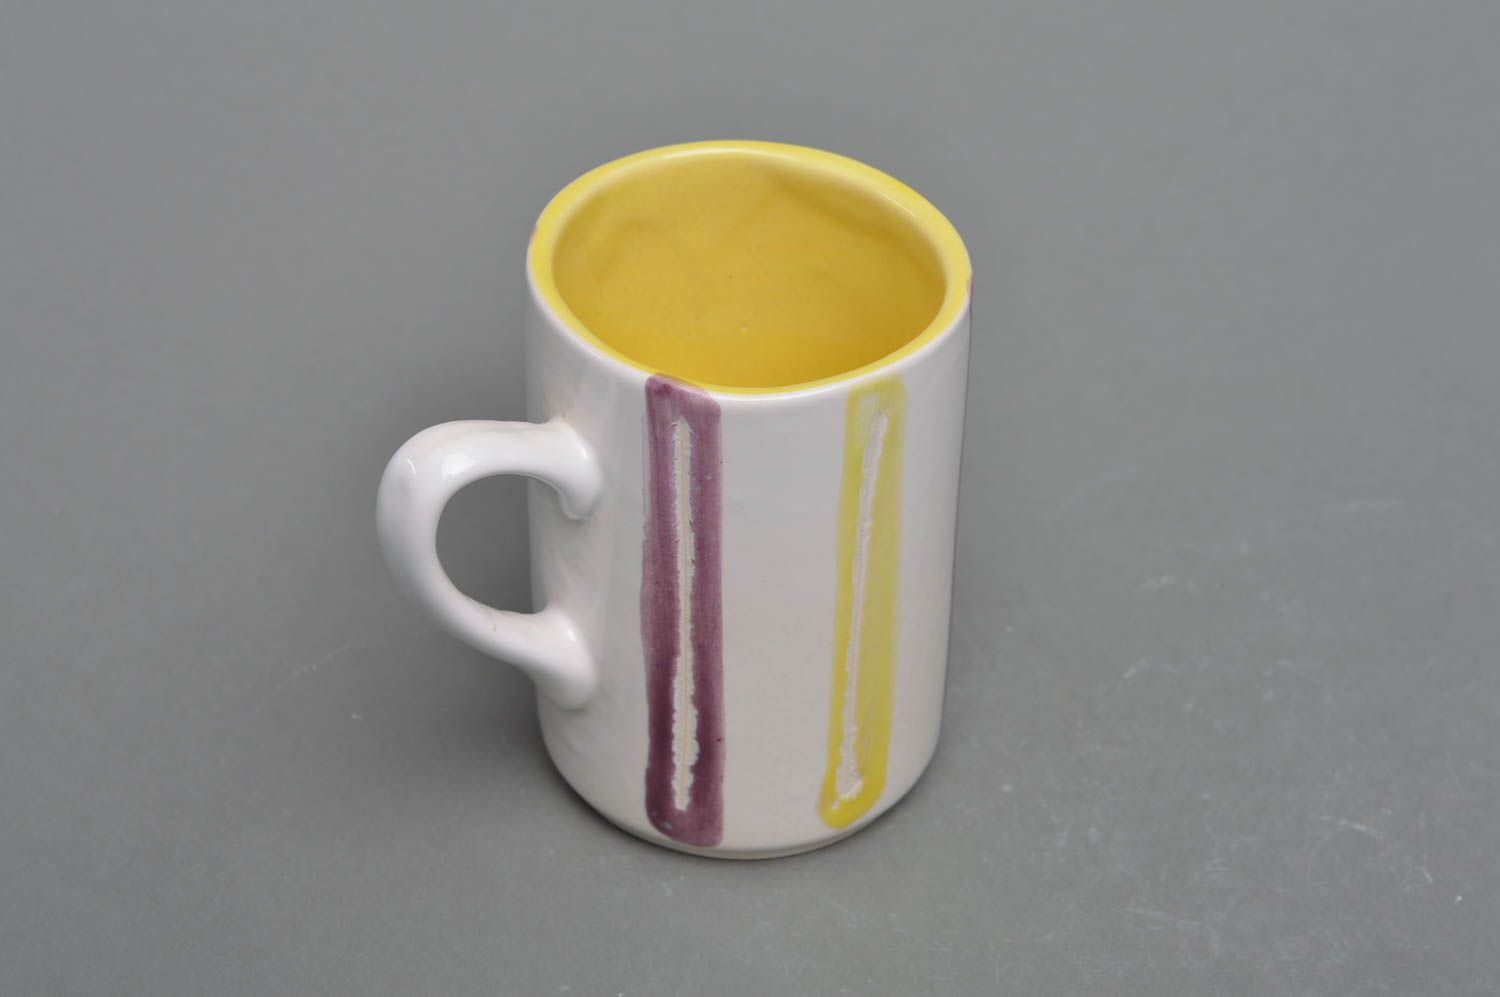 Оригинальная чашка из фарфора ручной работы расписанная глазурью Полоска фото 2